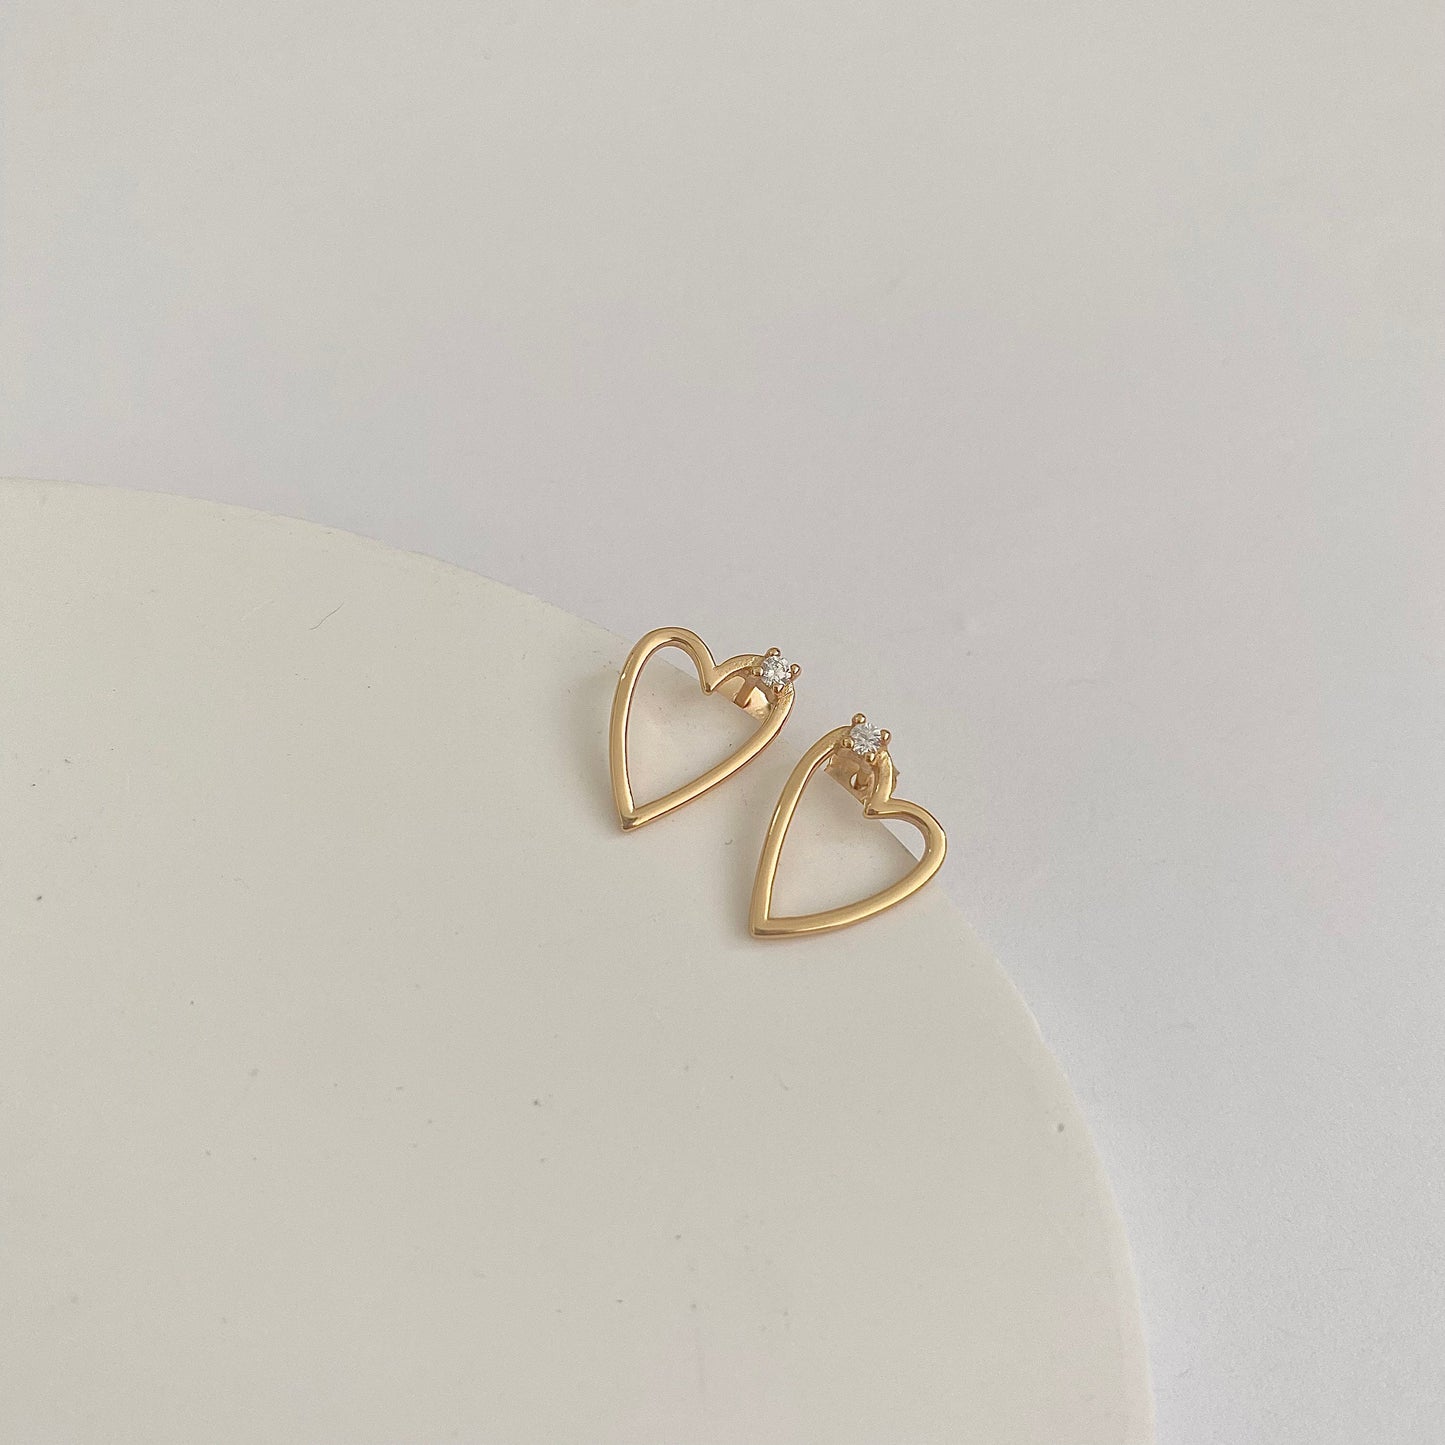 Golden Heart Dainty S925 Silver Earrings